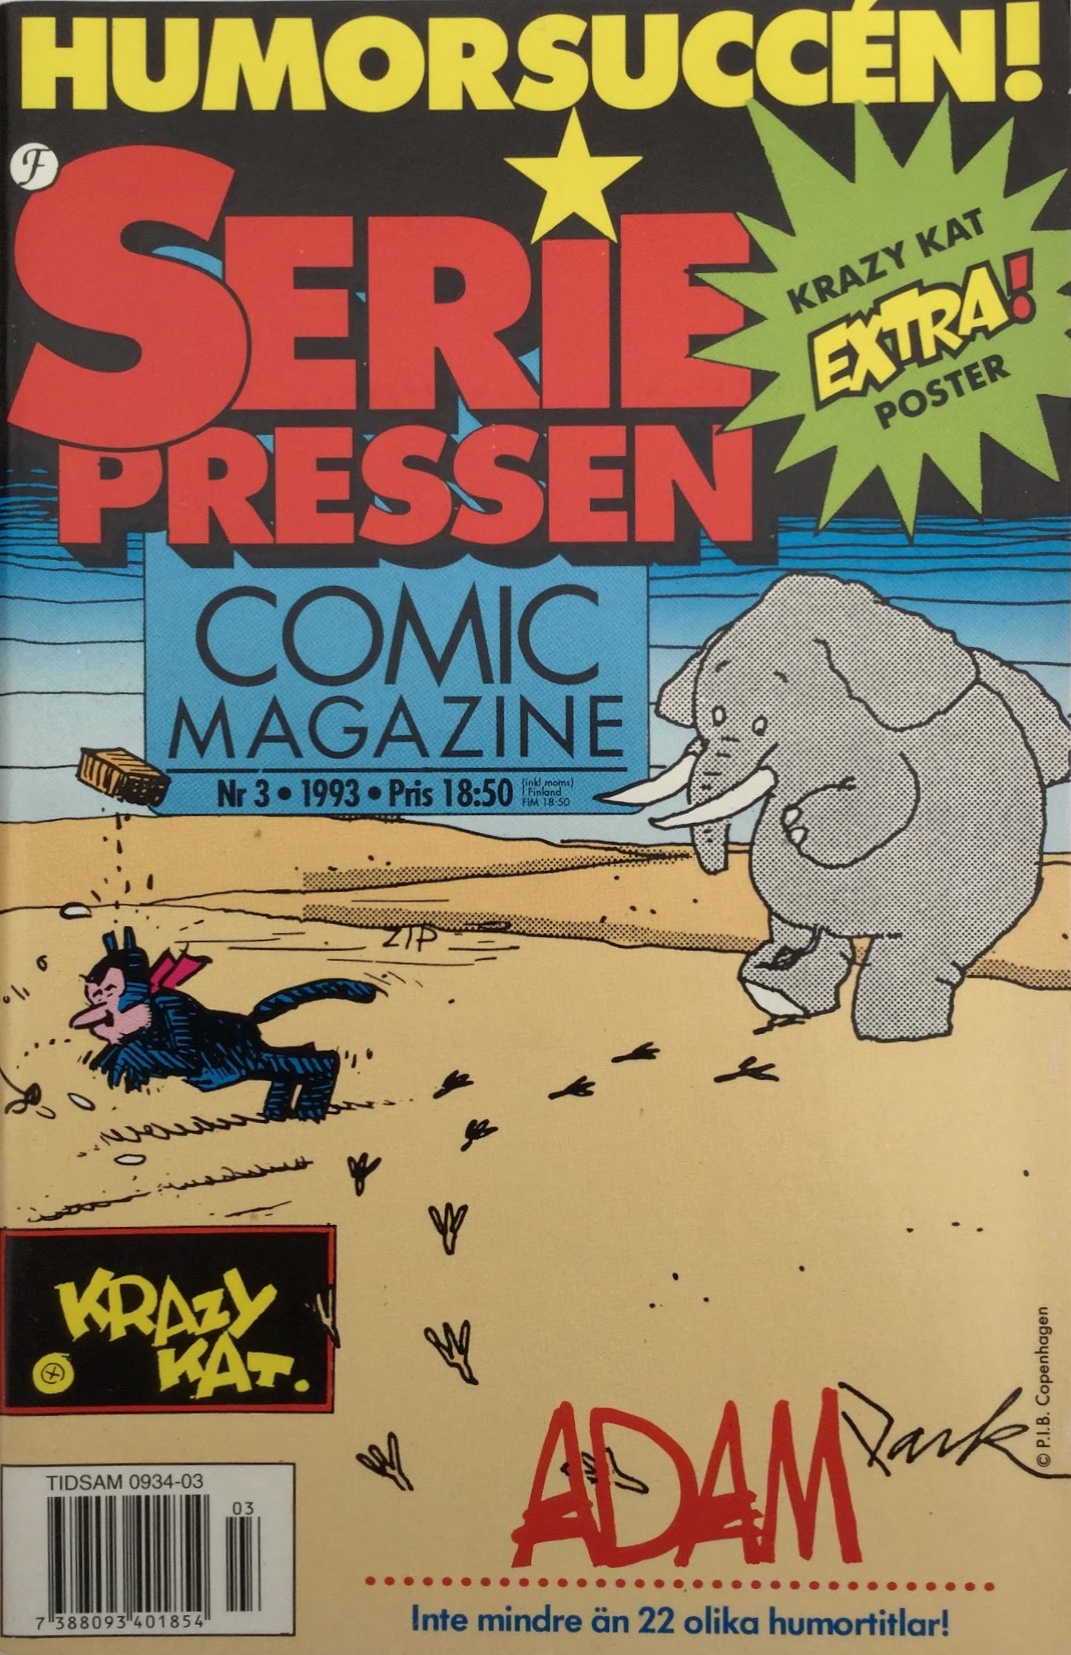 SeriePressen nr3, 1993 från Formatic Press 1993-94